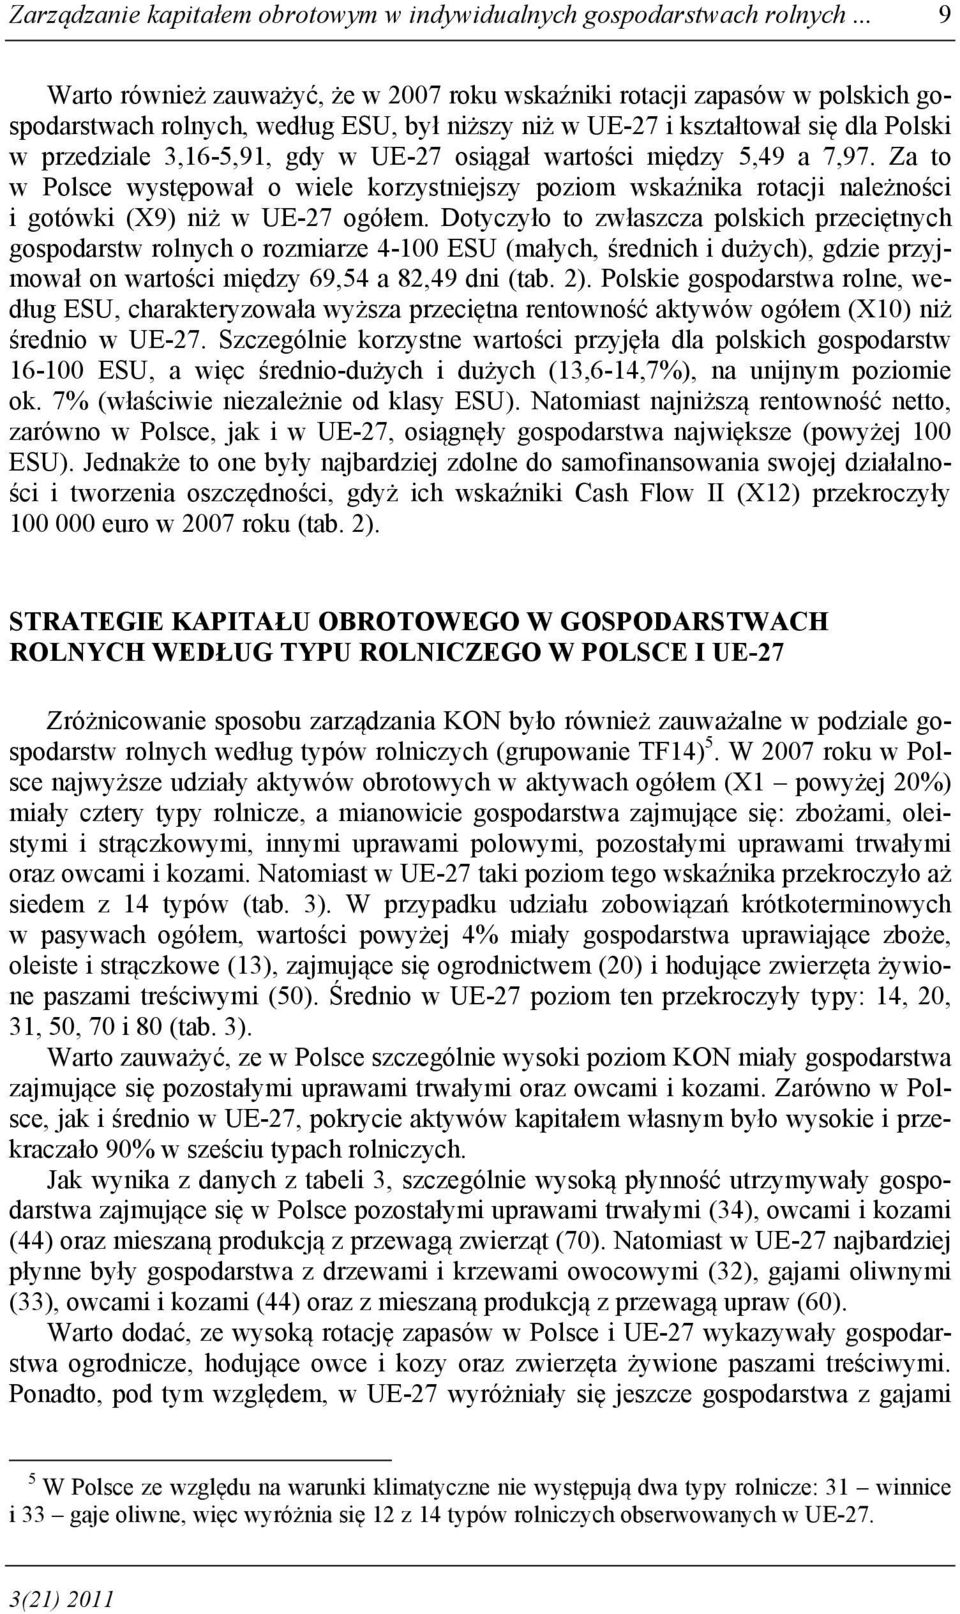 UE-27 osiągał wartości między 5,49 a 7,97. Za to w Polsce występował o wiele korzystniejszy poziom wskaźnika rotacji należności i gotówki (X9) niż w UE-27 ogółem.